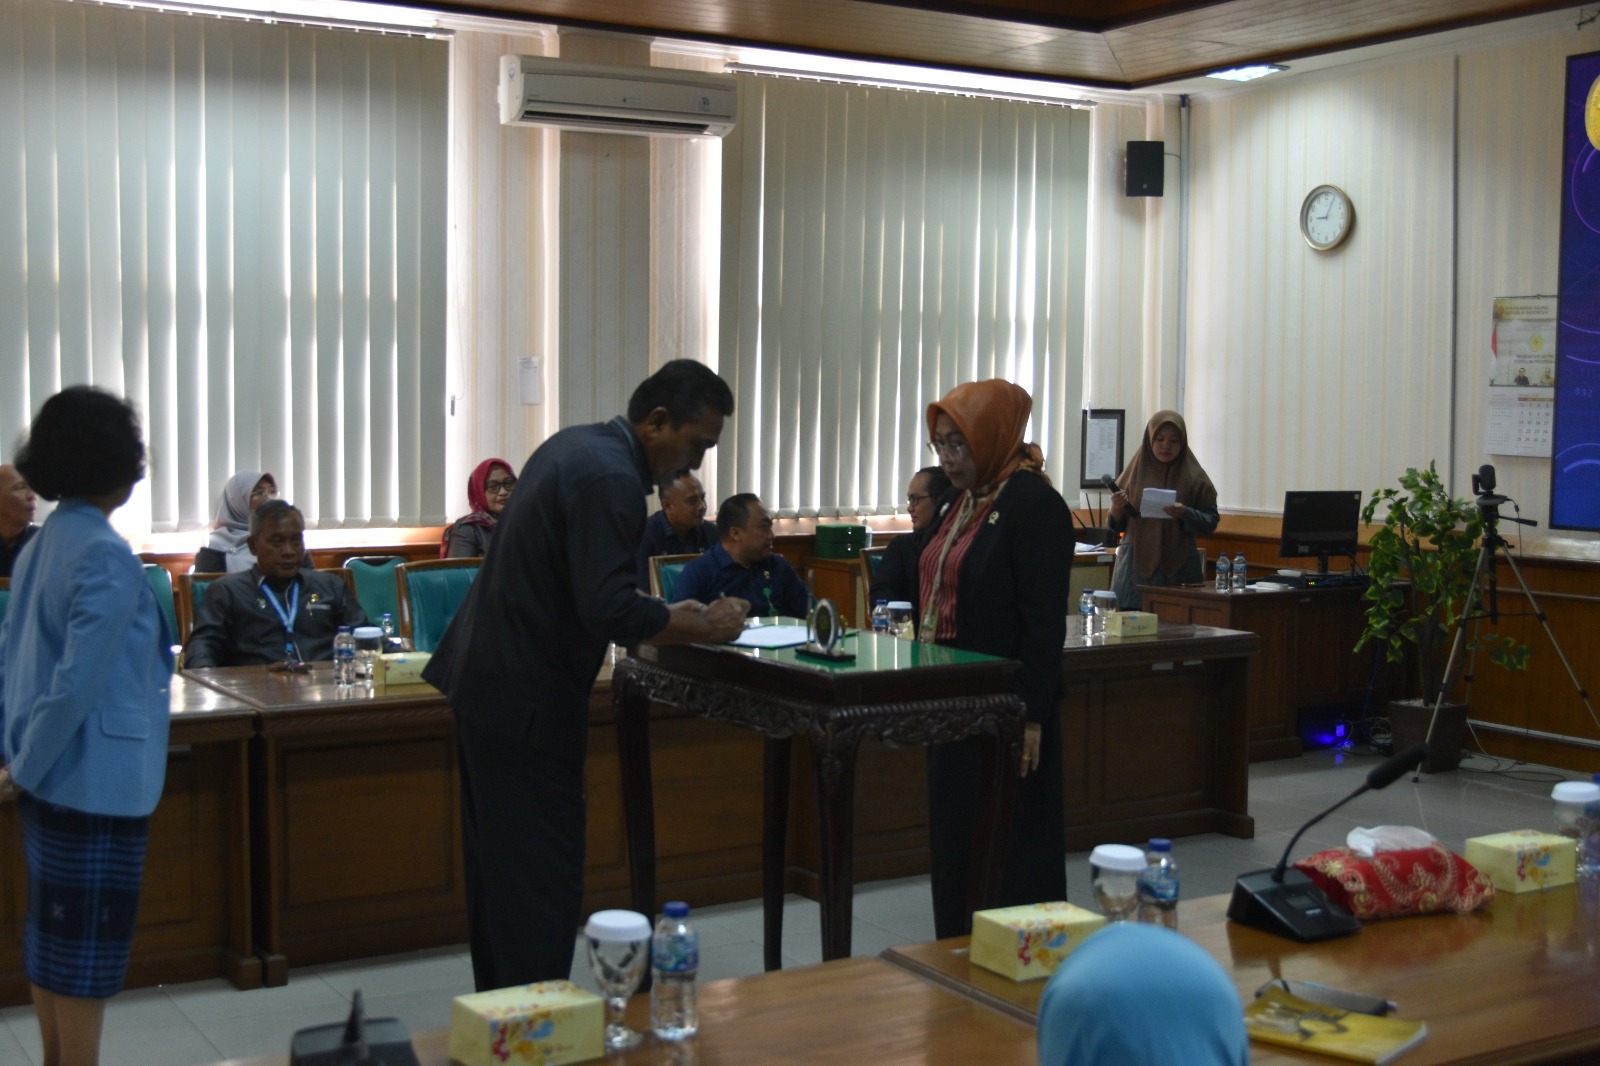 Ketua Pengadilan Negeri Yogyakarta Menghadiri Penandatangan Pakta Integritas dan Sosialisasi Sistem Pengawasan di Pengadilan Tinggi Yogyakarta